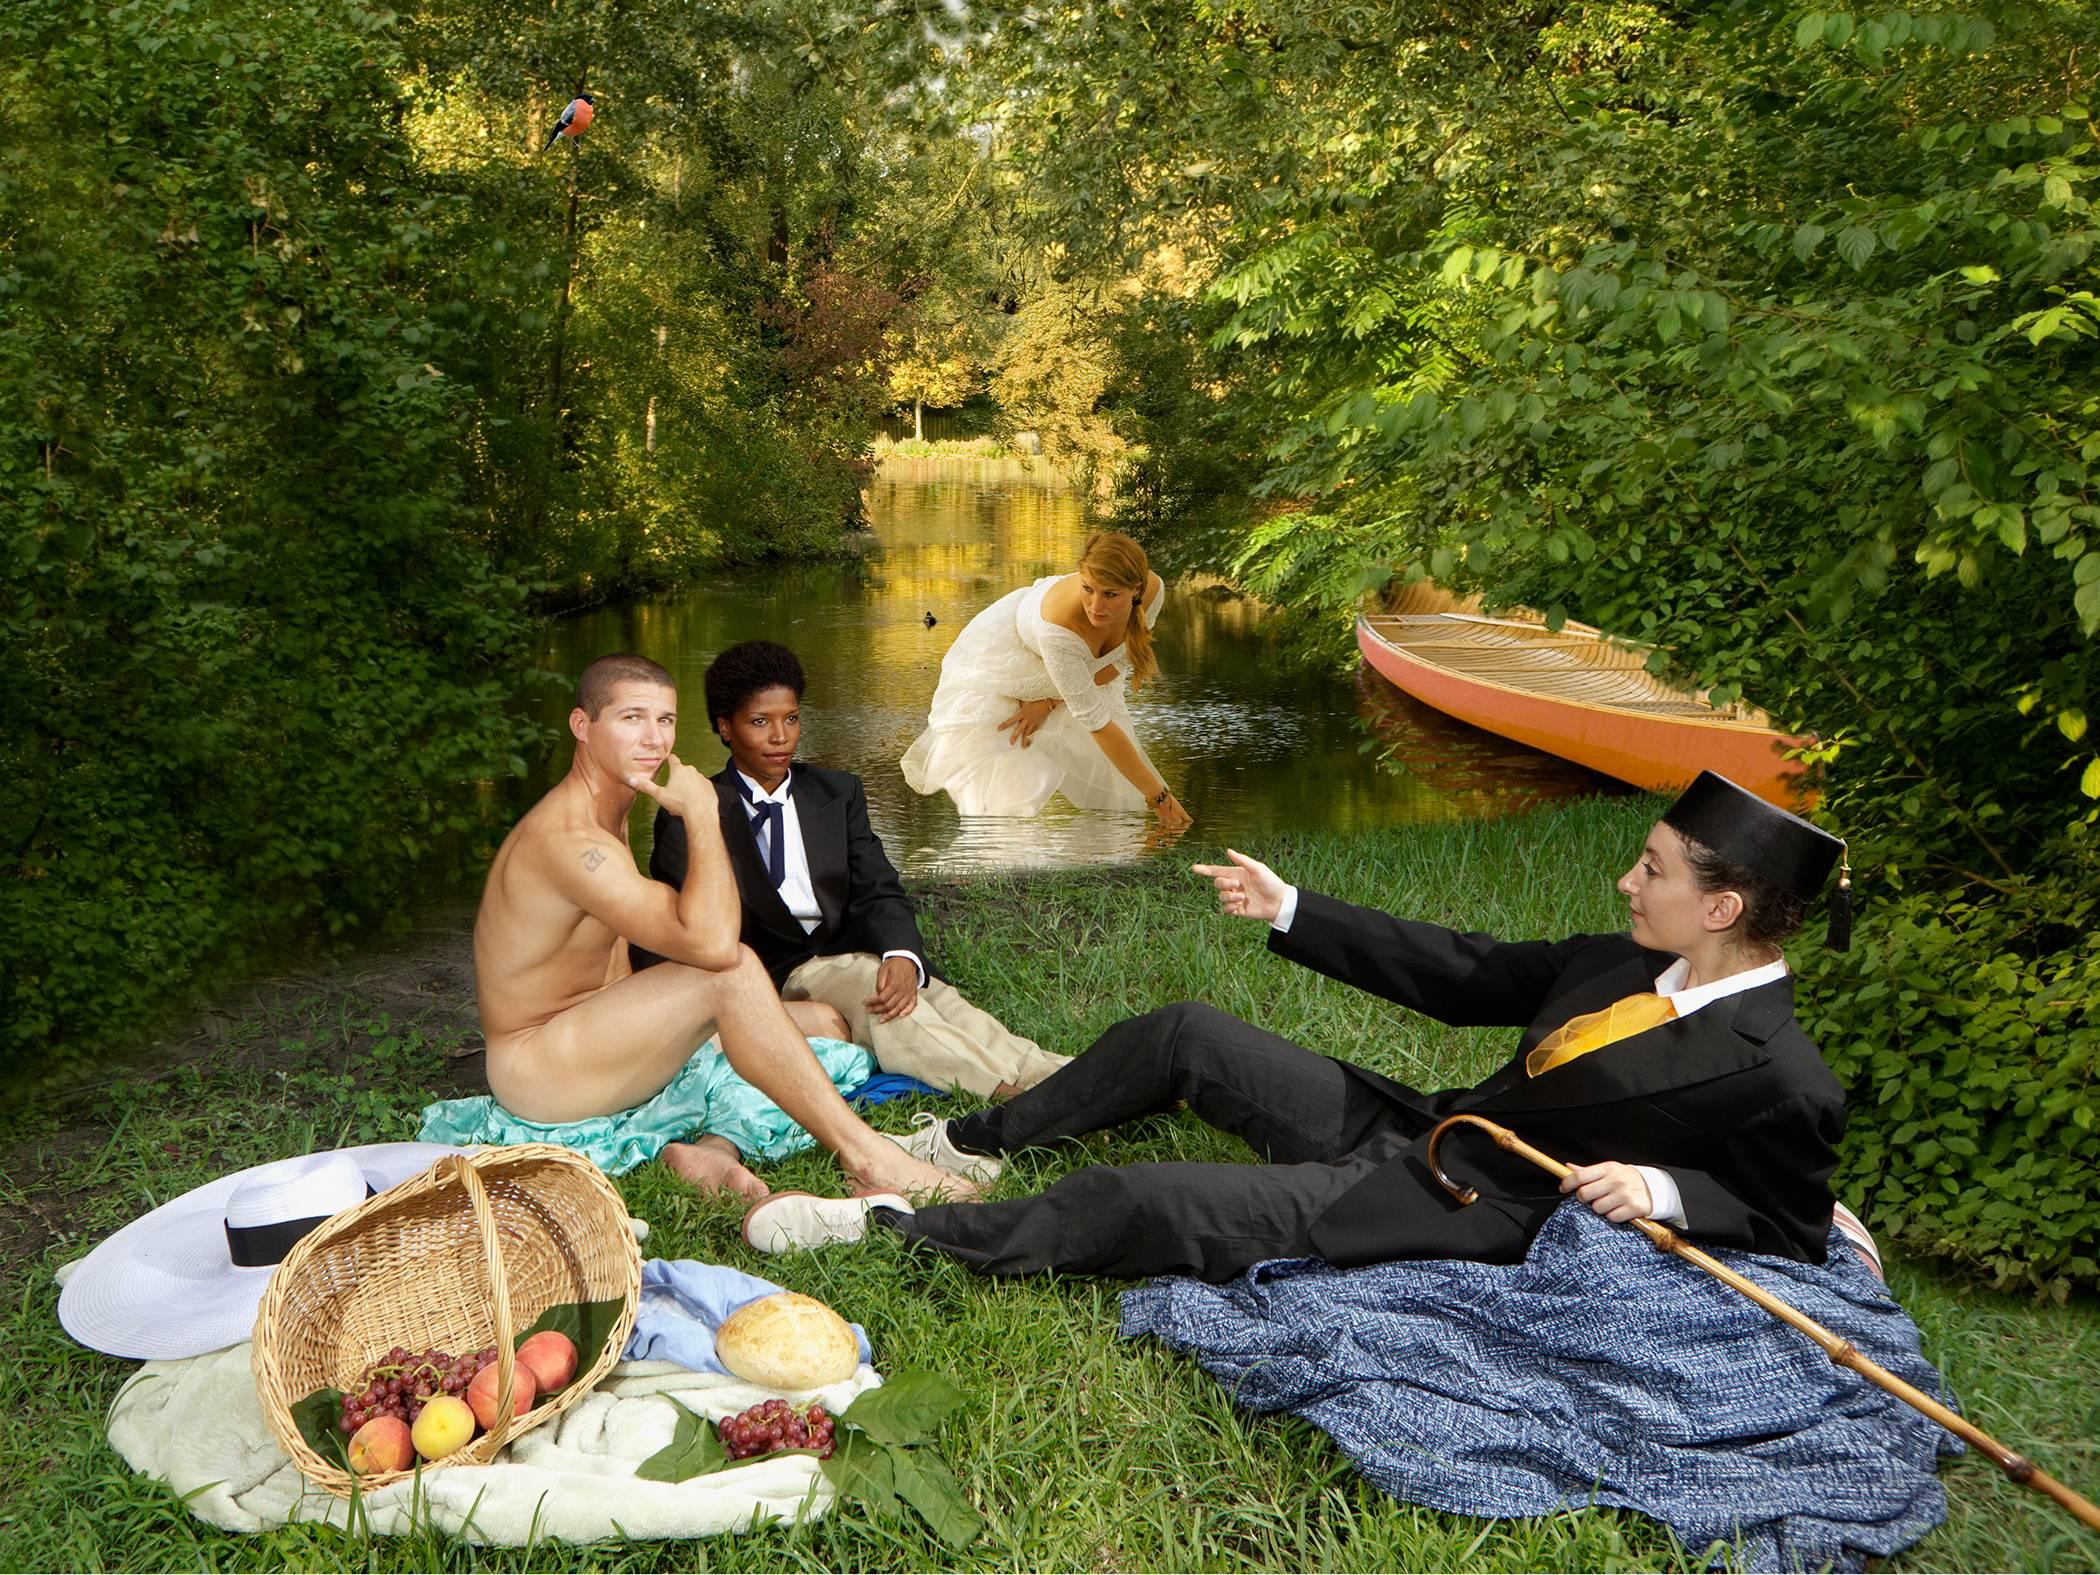 E2 - Kleinveld & Julien Figurative Photograph - Ode to Manet's Déjeuner sur l'herbe